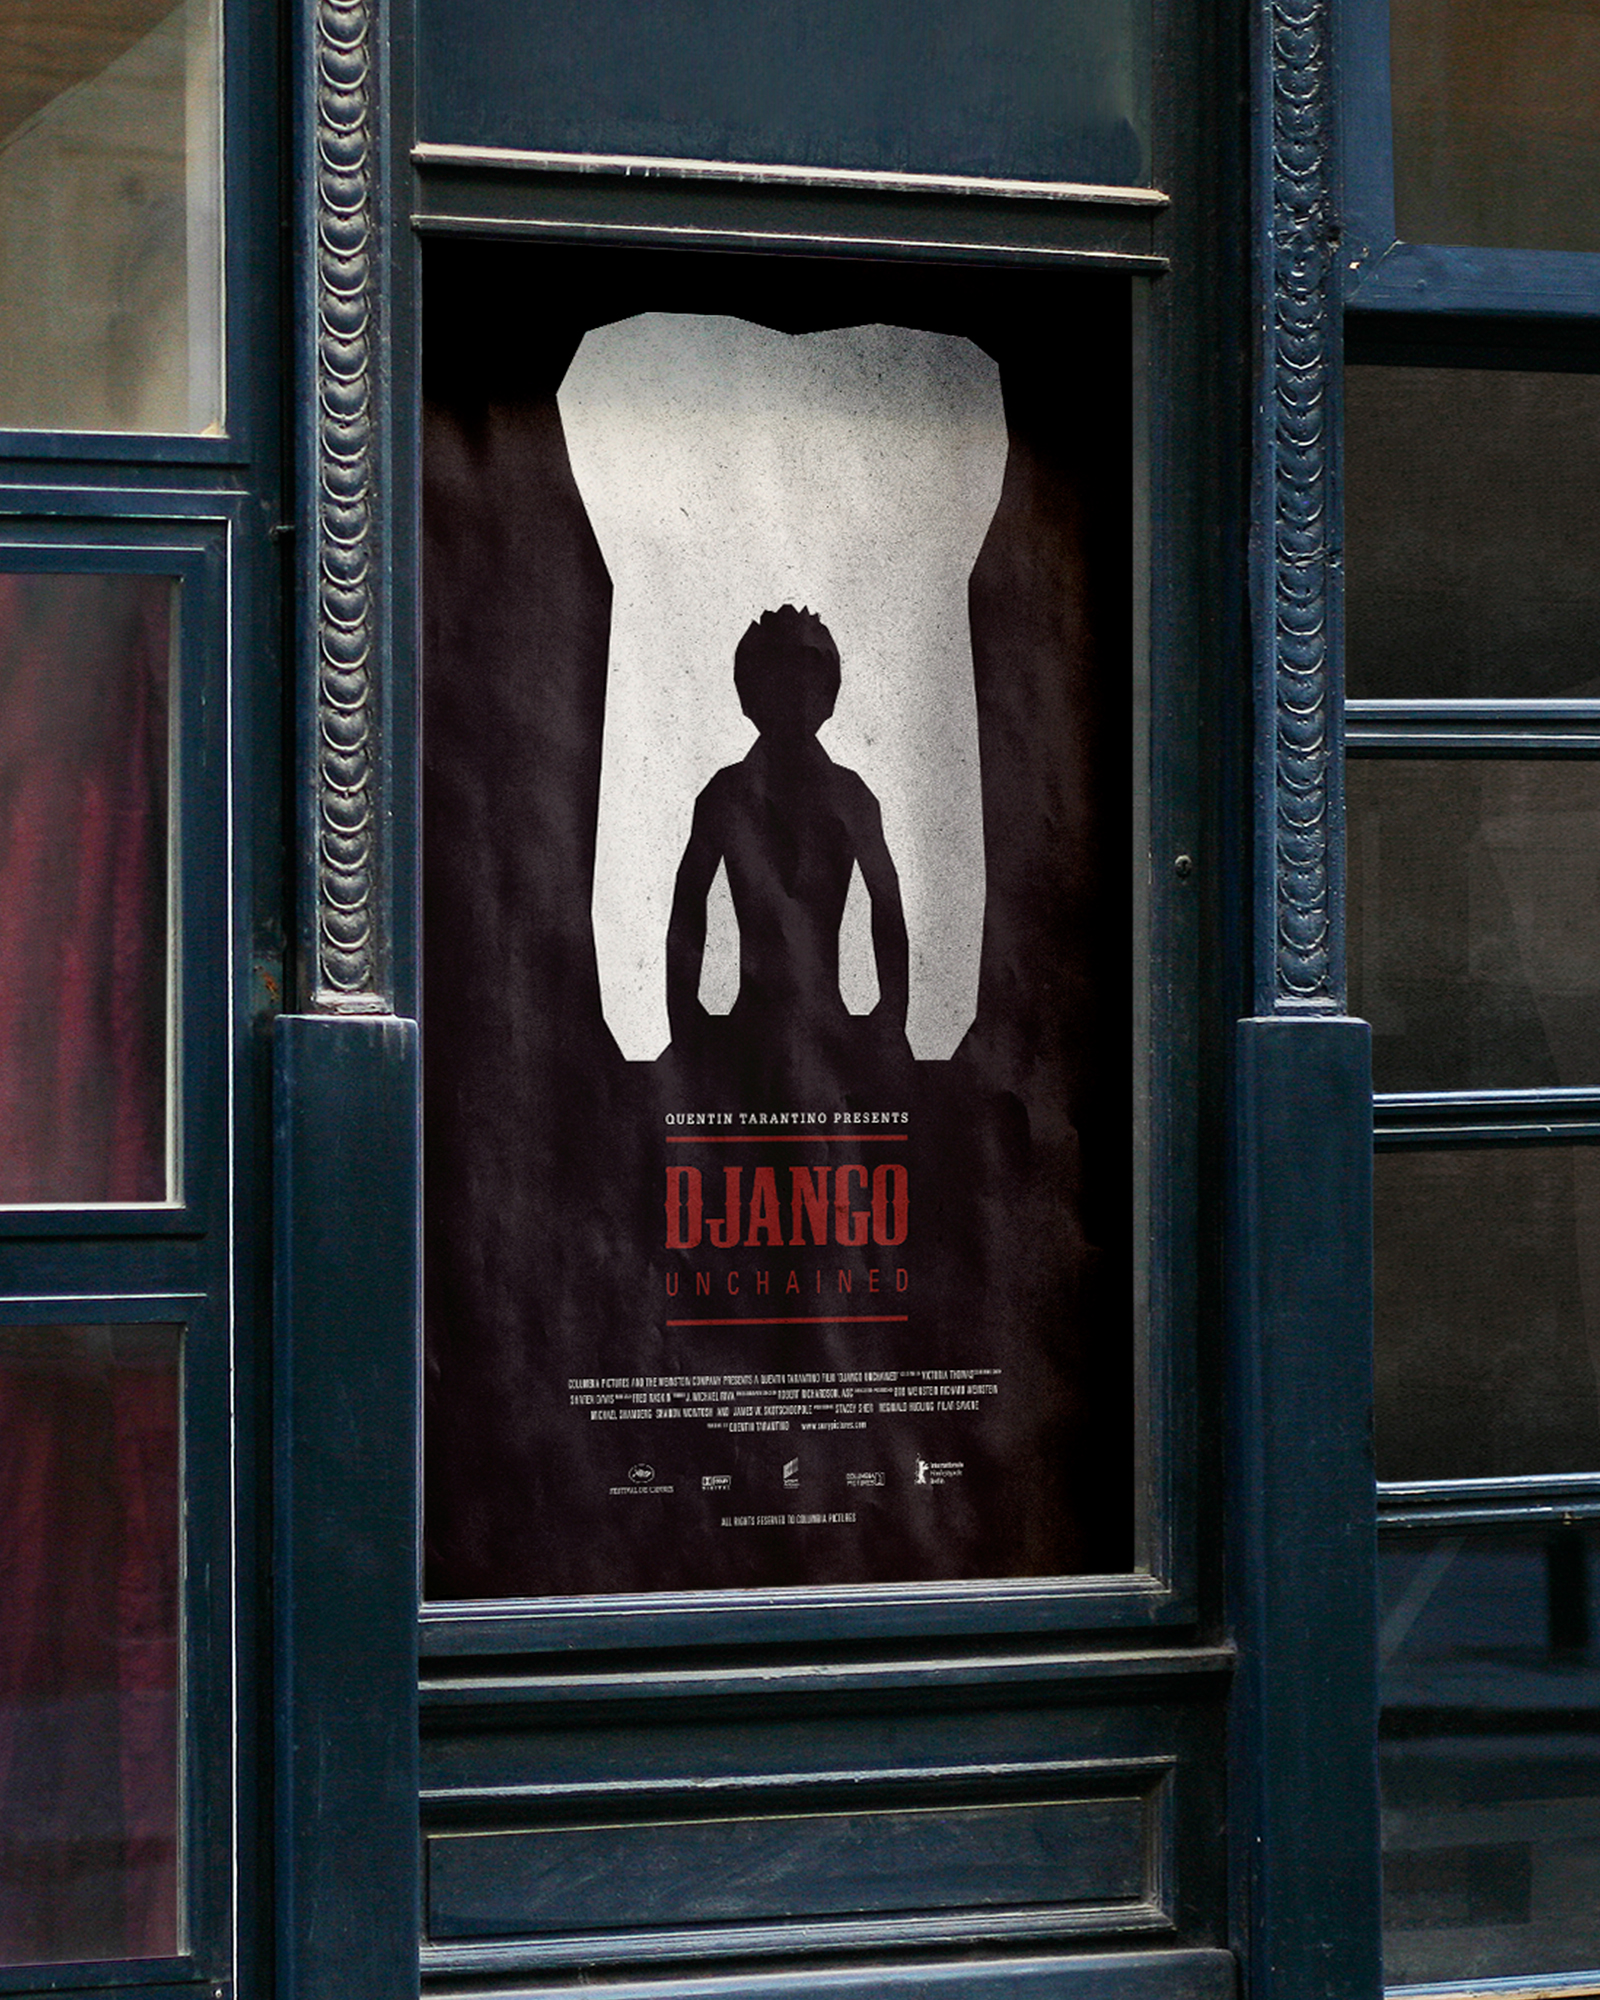 django-poster